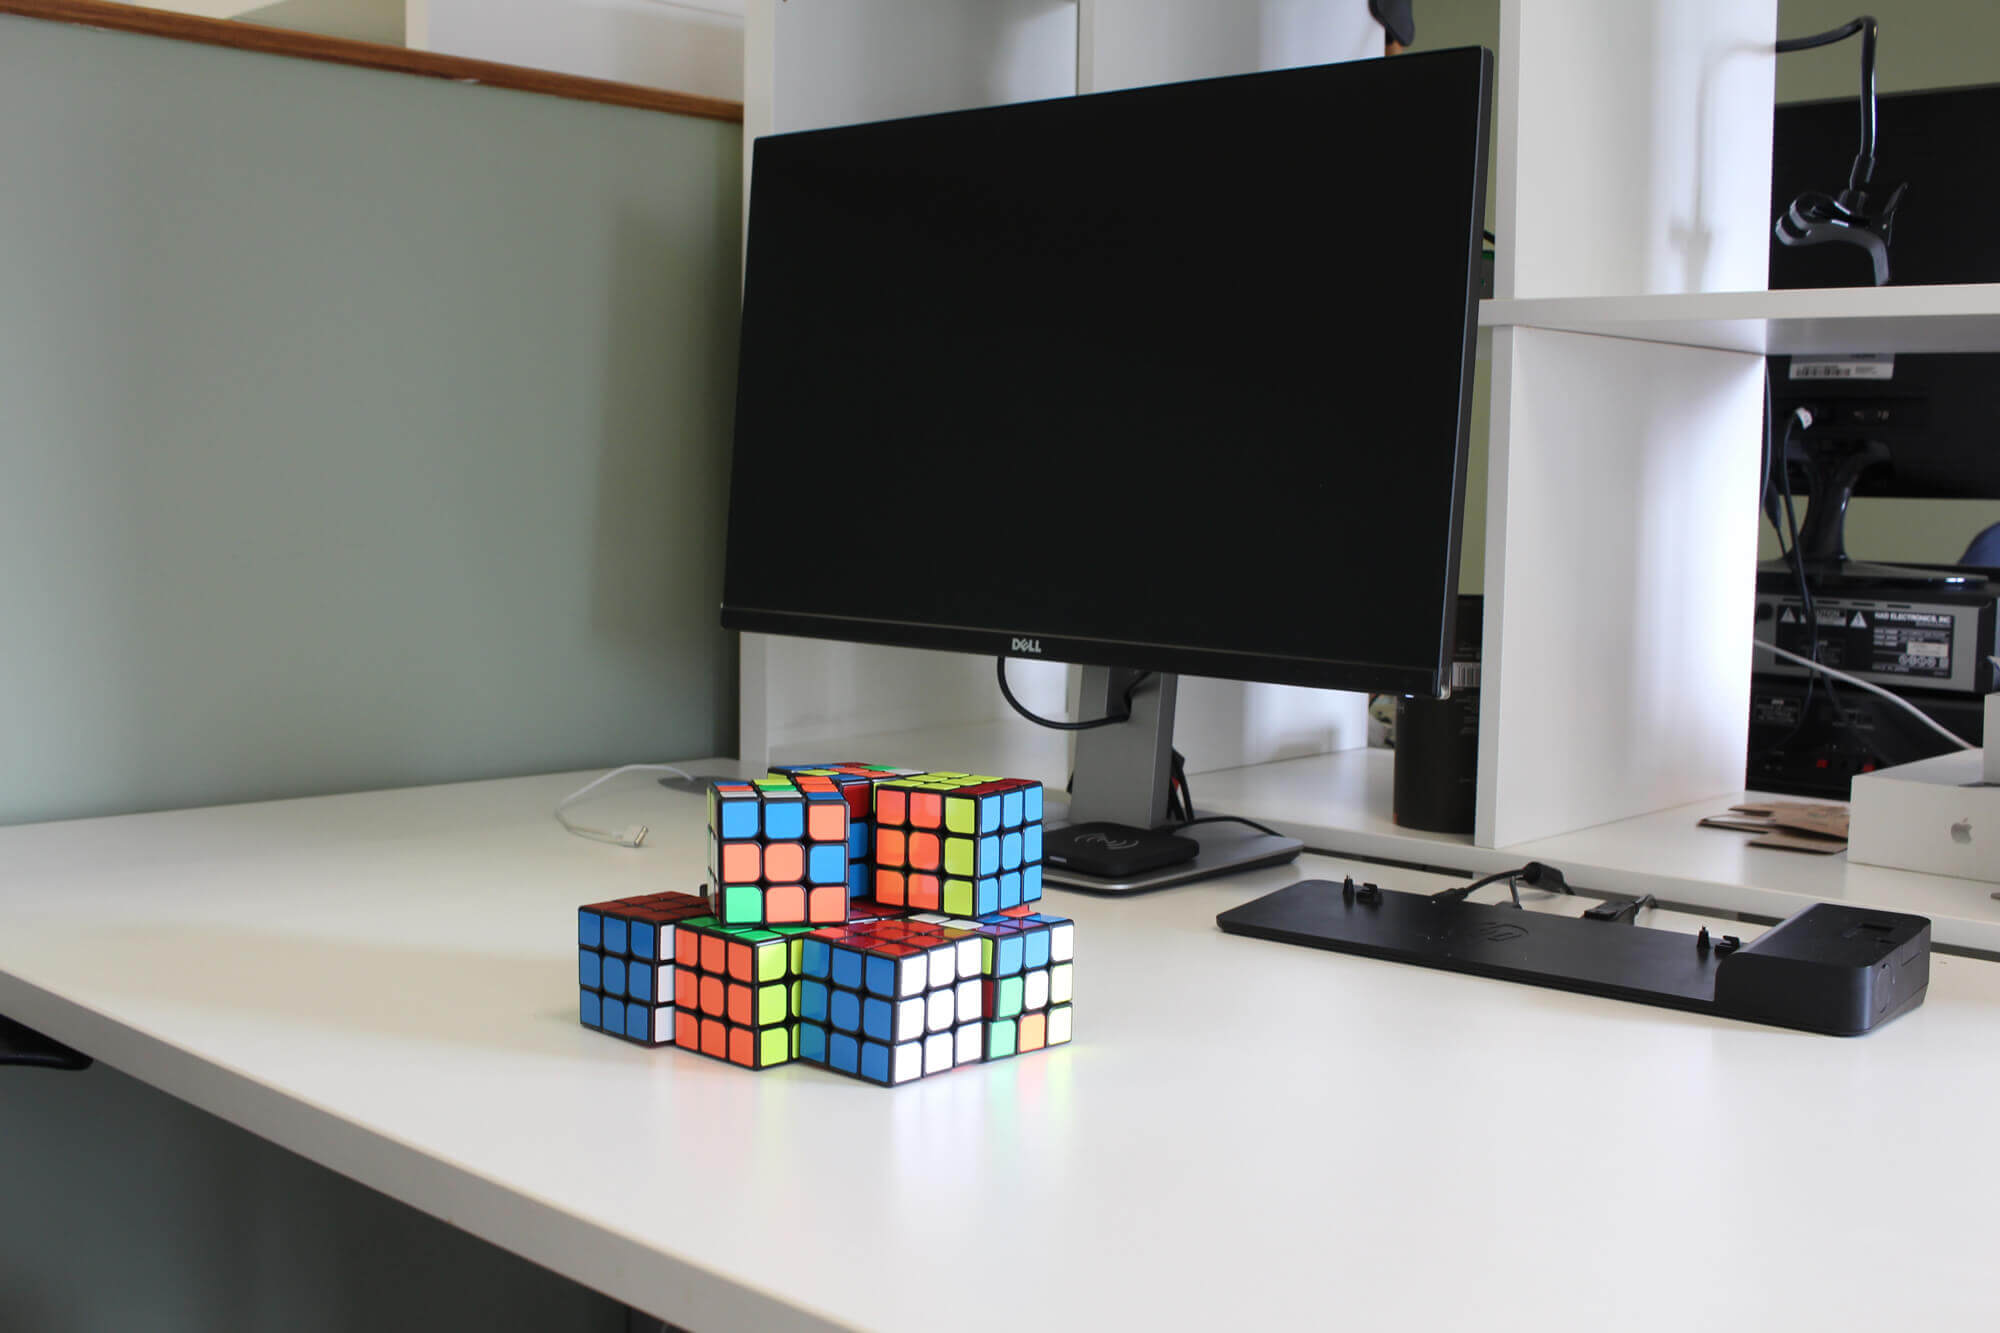 rubiks cubes on desk